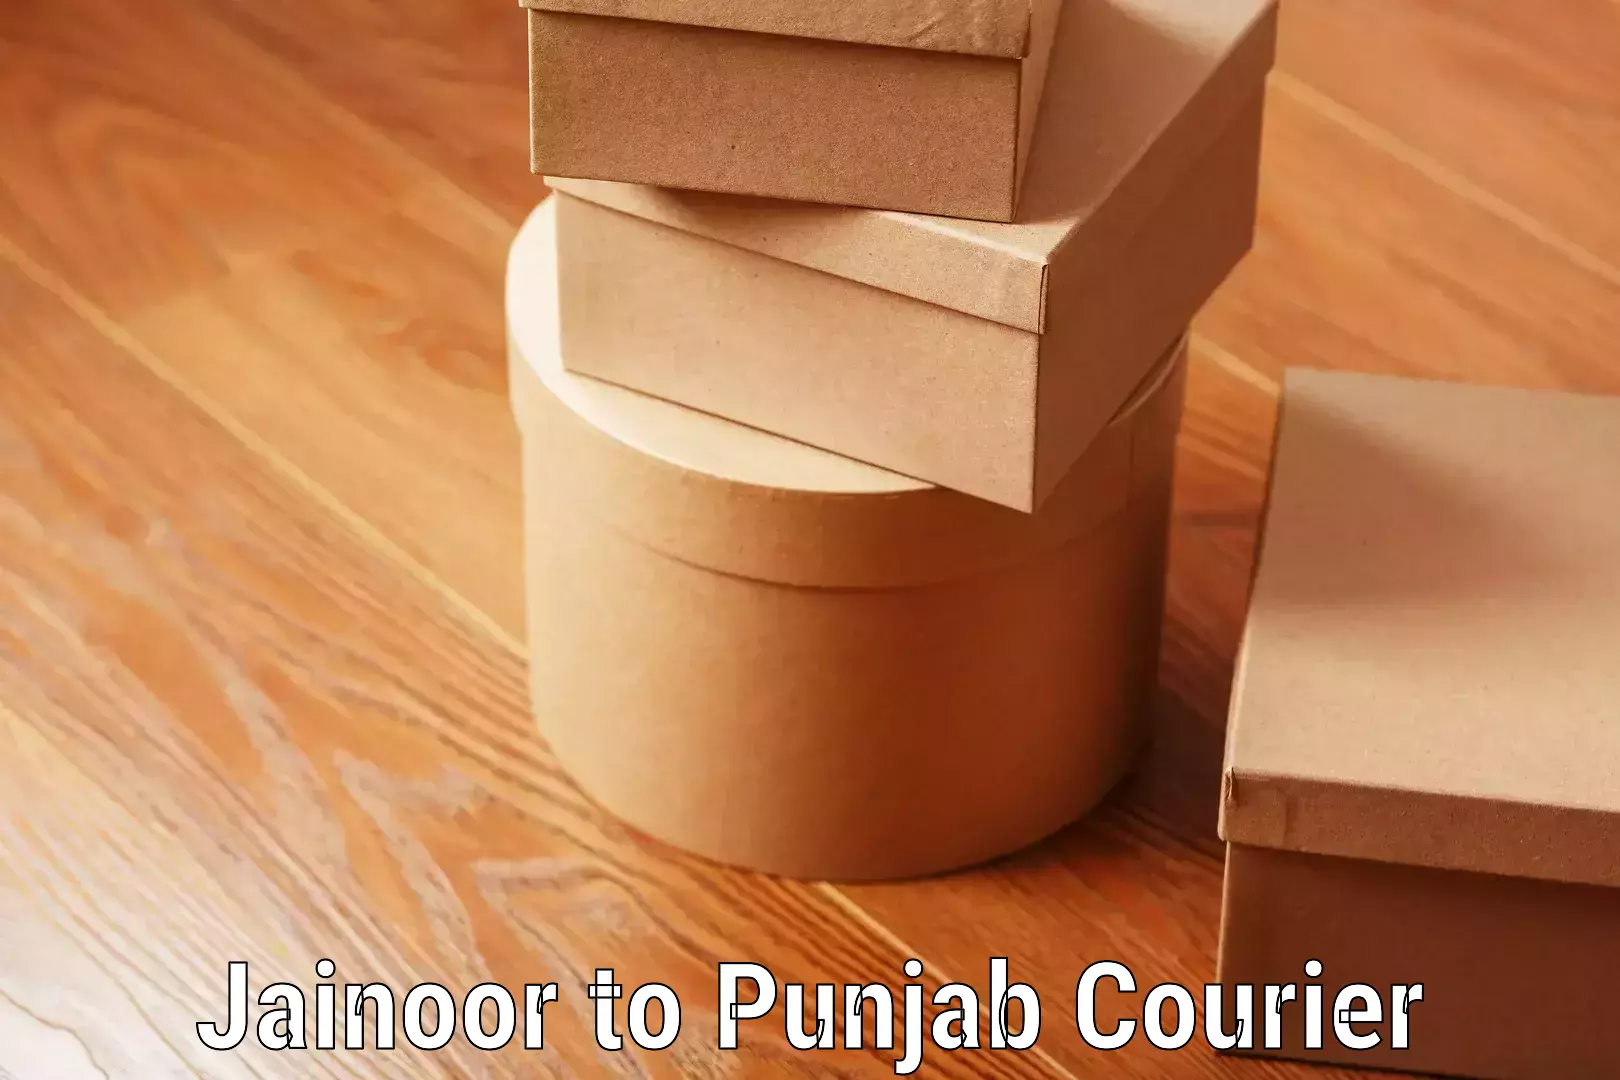 Luggage transport tips Jainoor to Punjab